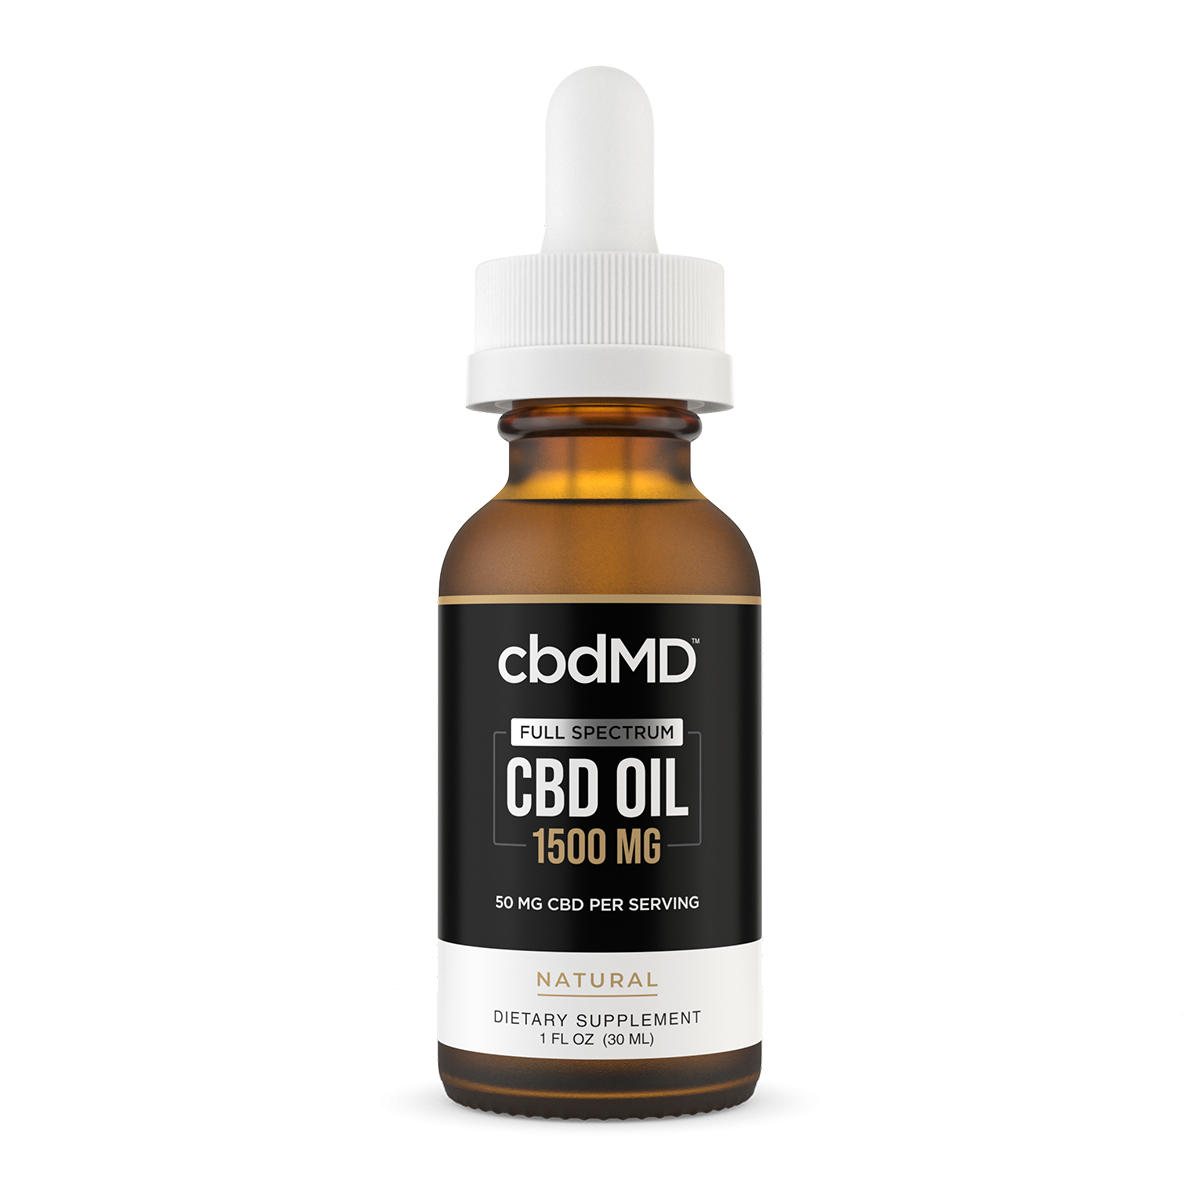 cbdMD Full Spectrum CBD Oil Tincture